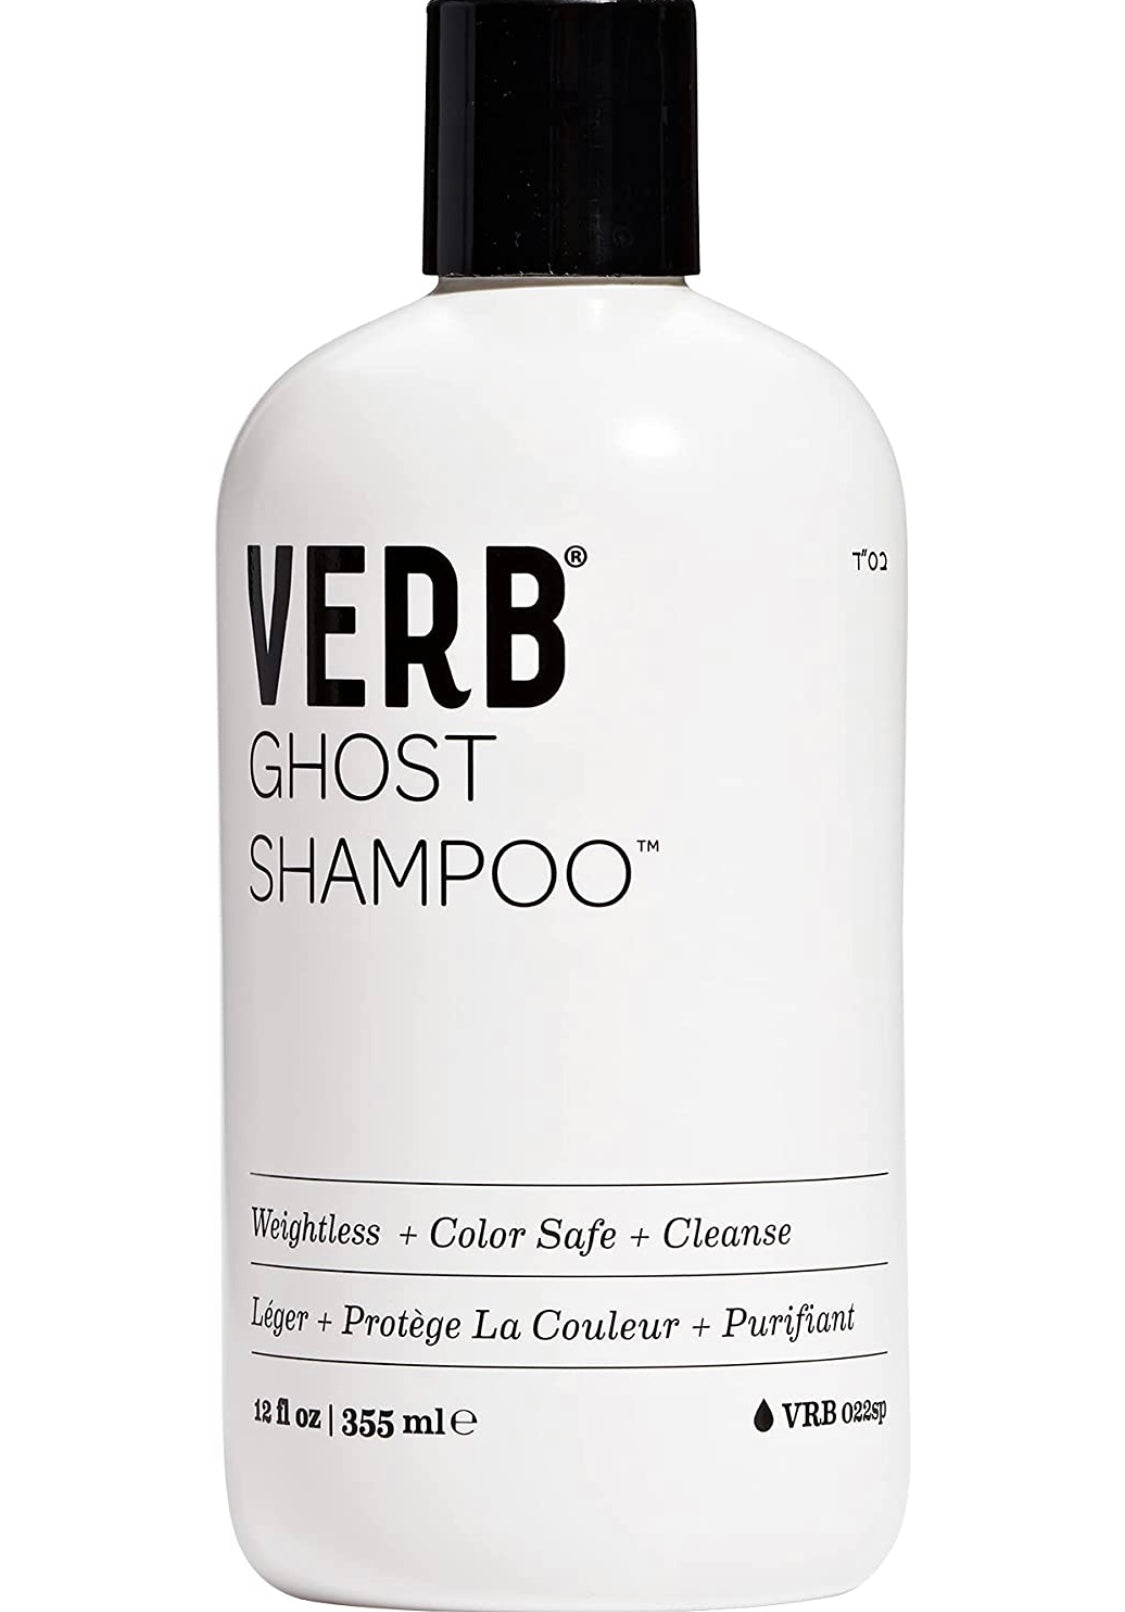 Verb - Ghost shampoo 12 fl. oz./ 355 ml